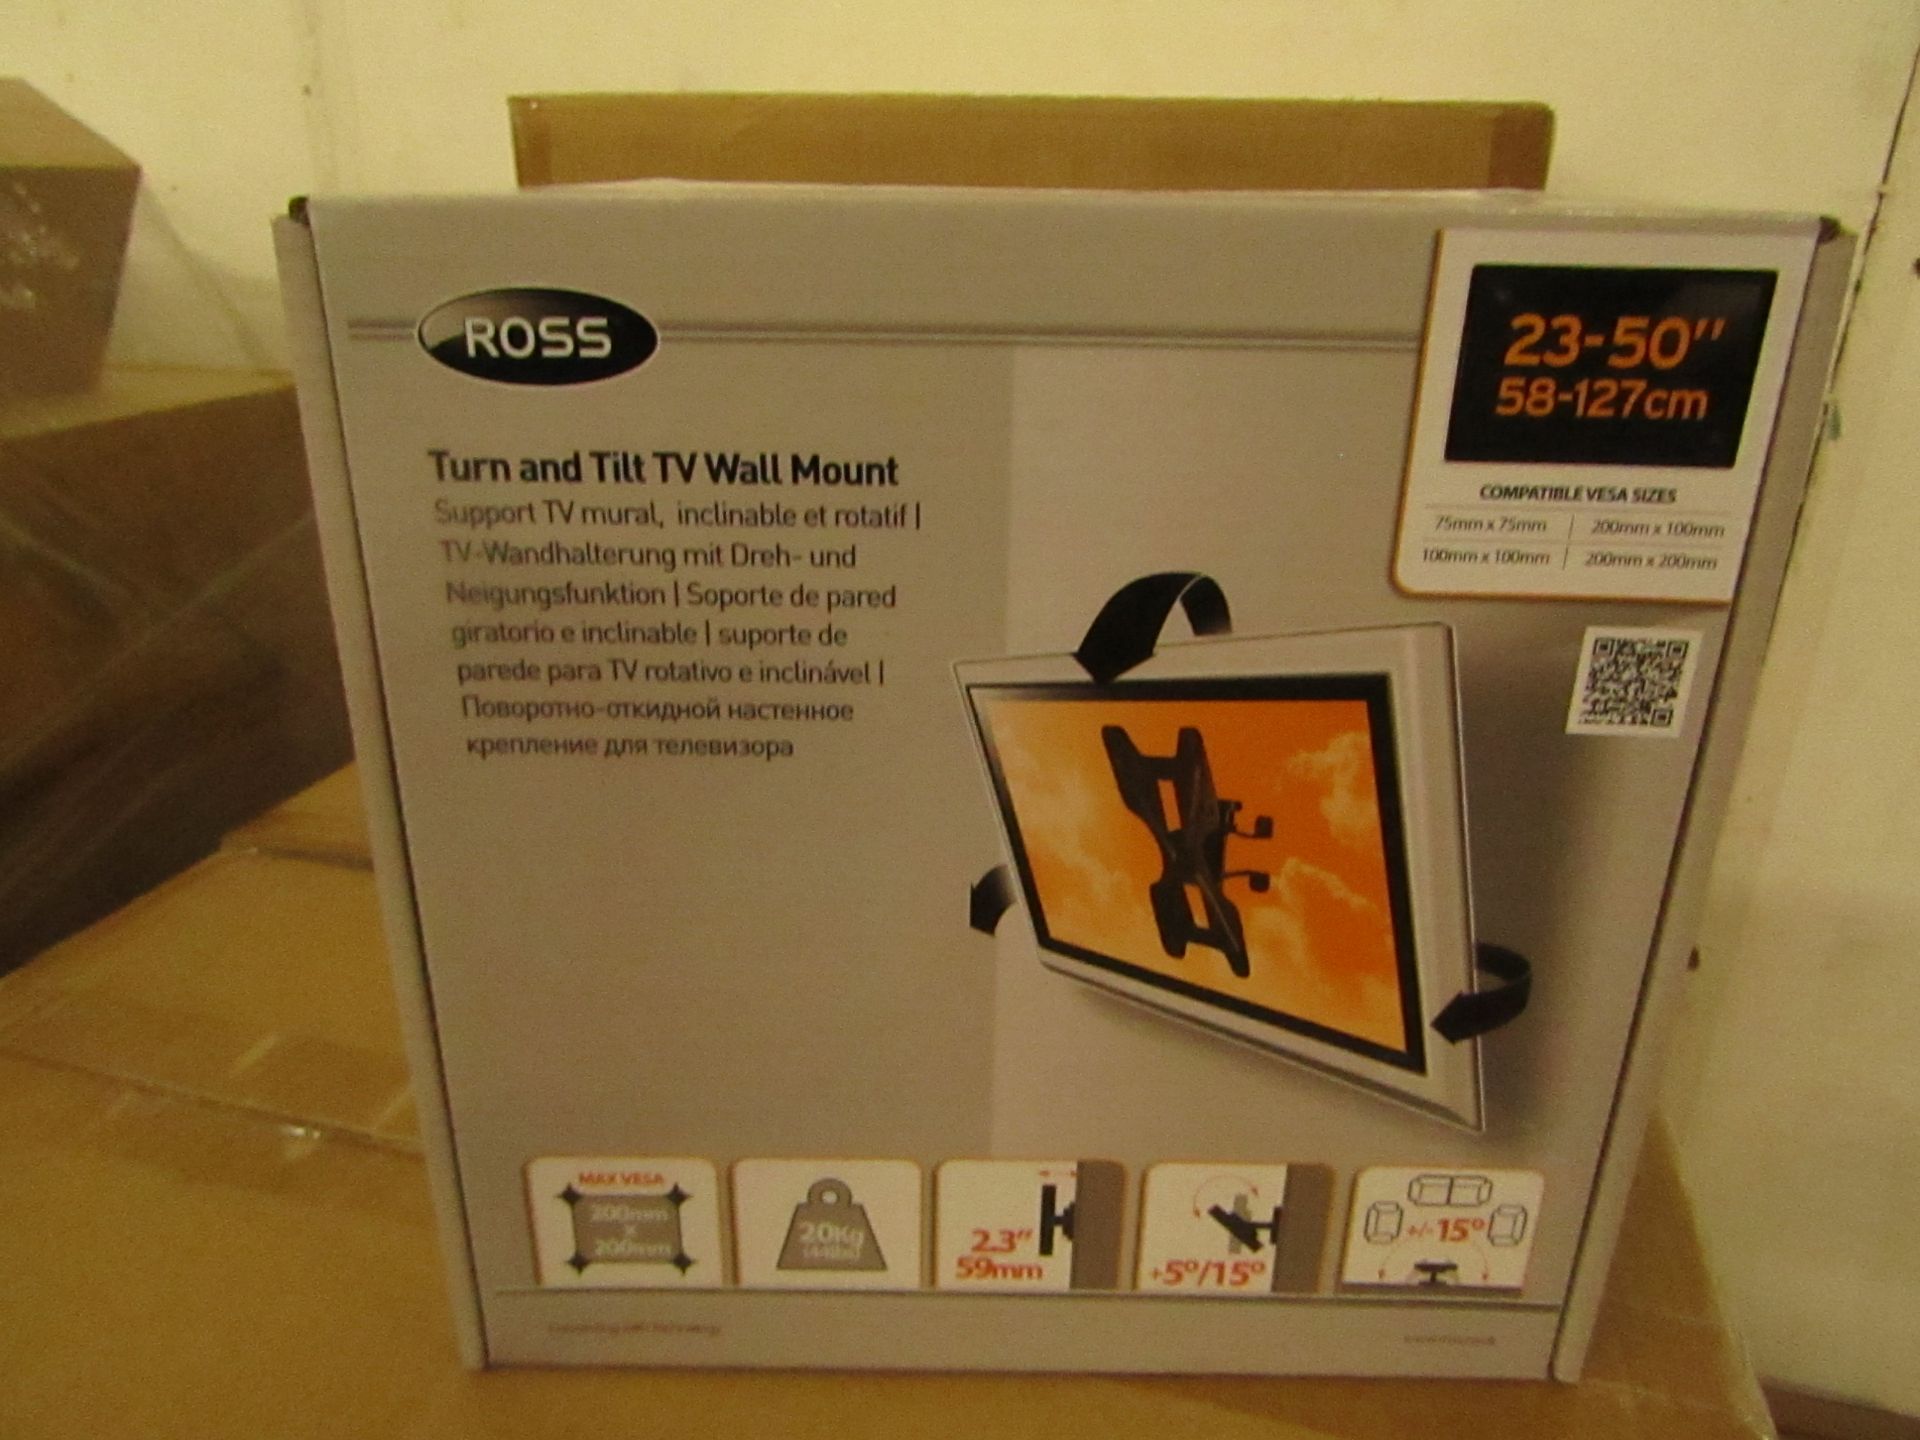 ROSS - Turn & Tilt TV Wall Mount - 23"/50" - 58-127cm - New & Boxed.